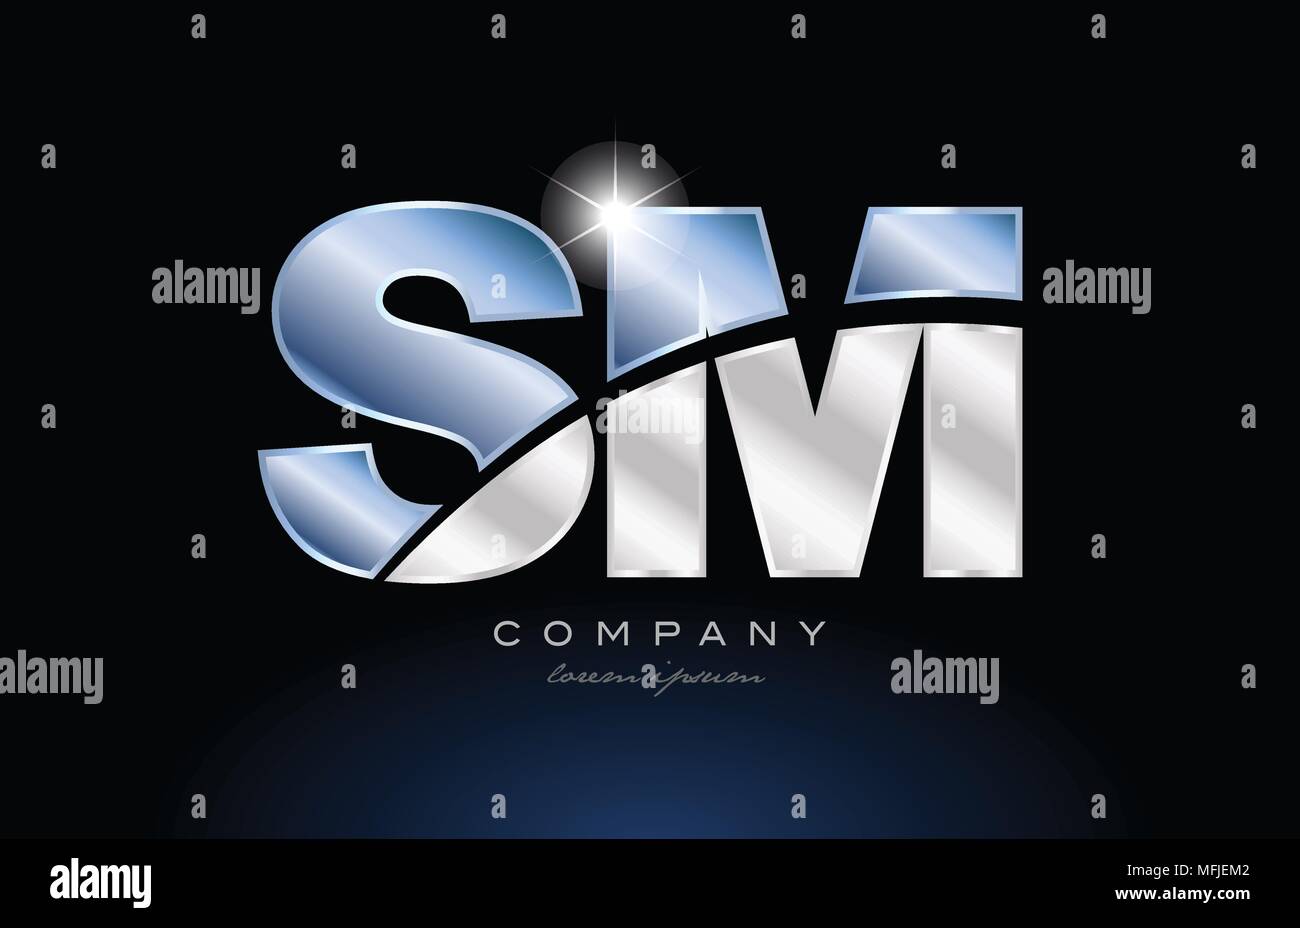 Lettre De L Alphabet Sm S M Logo Design Avec Couleur Bleu Metal Adapte Pour Une Societe Ou Entreprise Image Vectorielle Stock Alamy